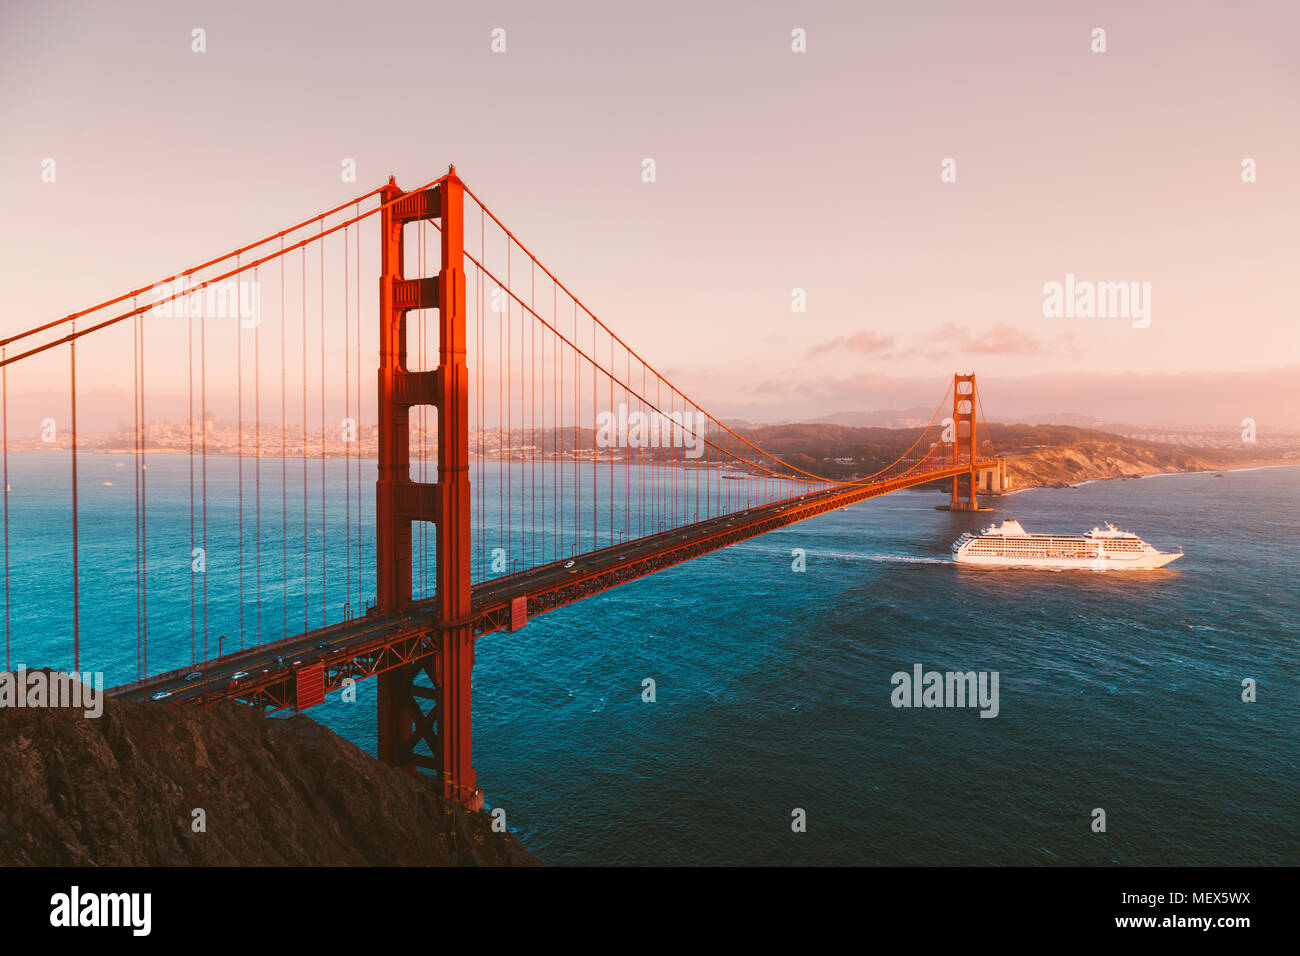 Belle vue panoramique de navire de croisière passant célèbre Golden Gate Bridge avec la skyline de San Francisco en arrière-plan au coucher du soleil, en Californie Banque D'Images